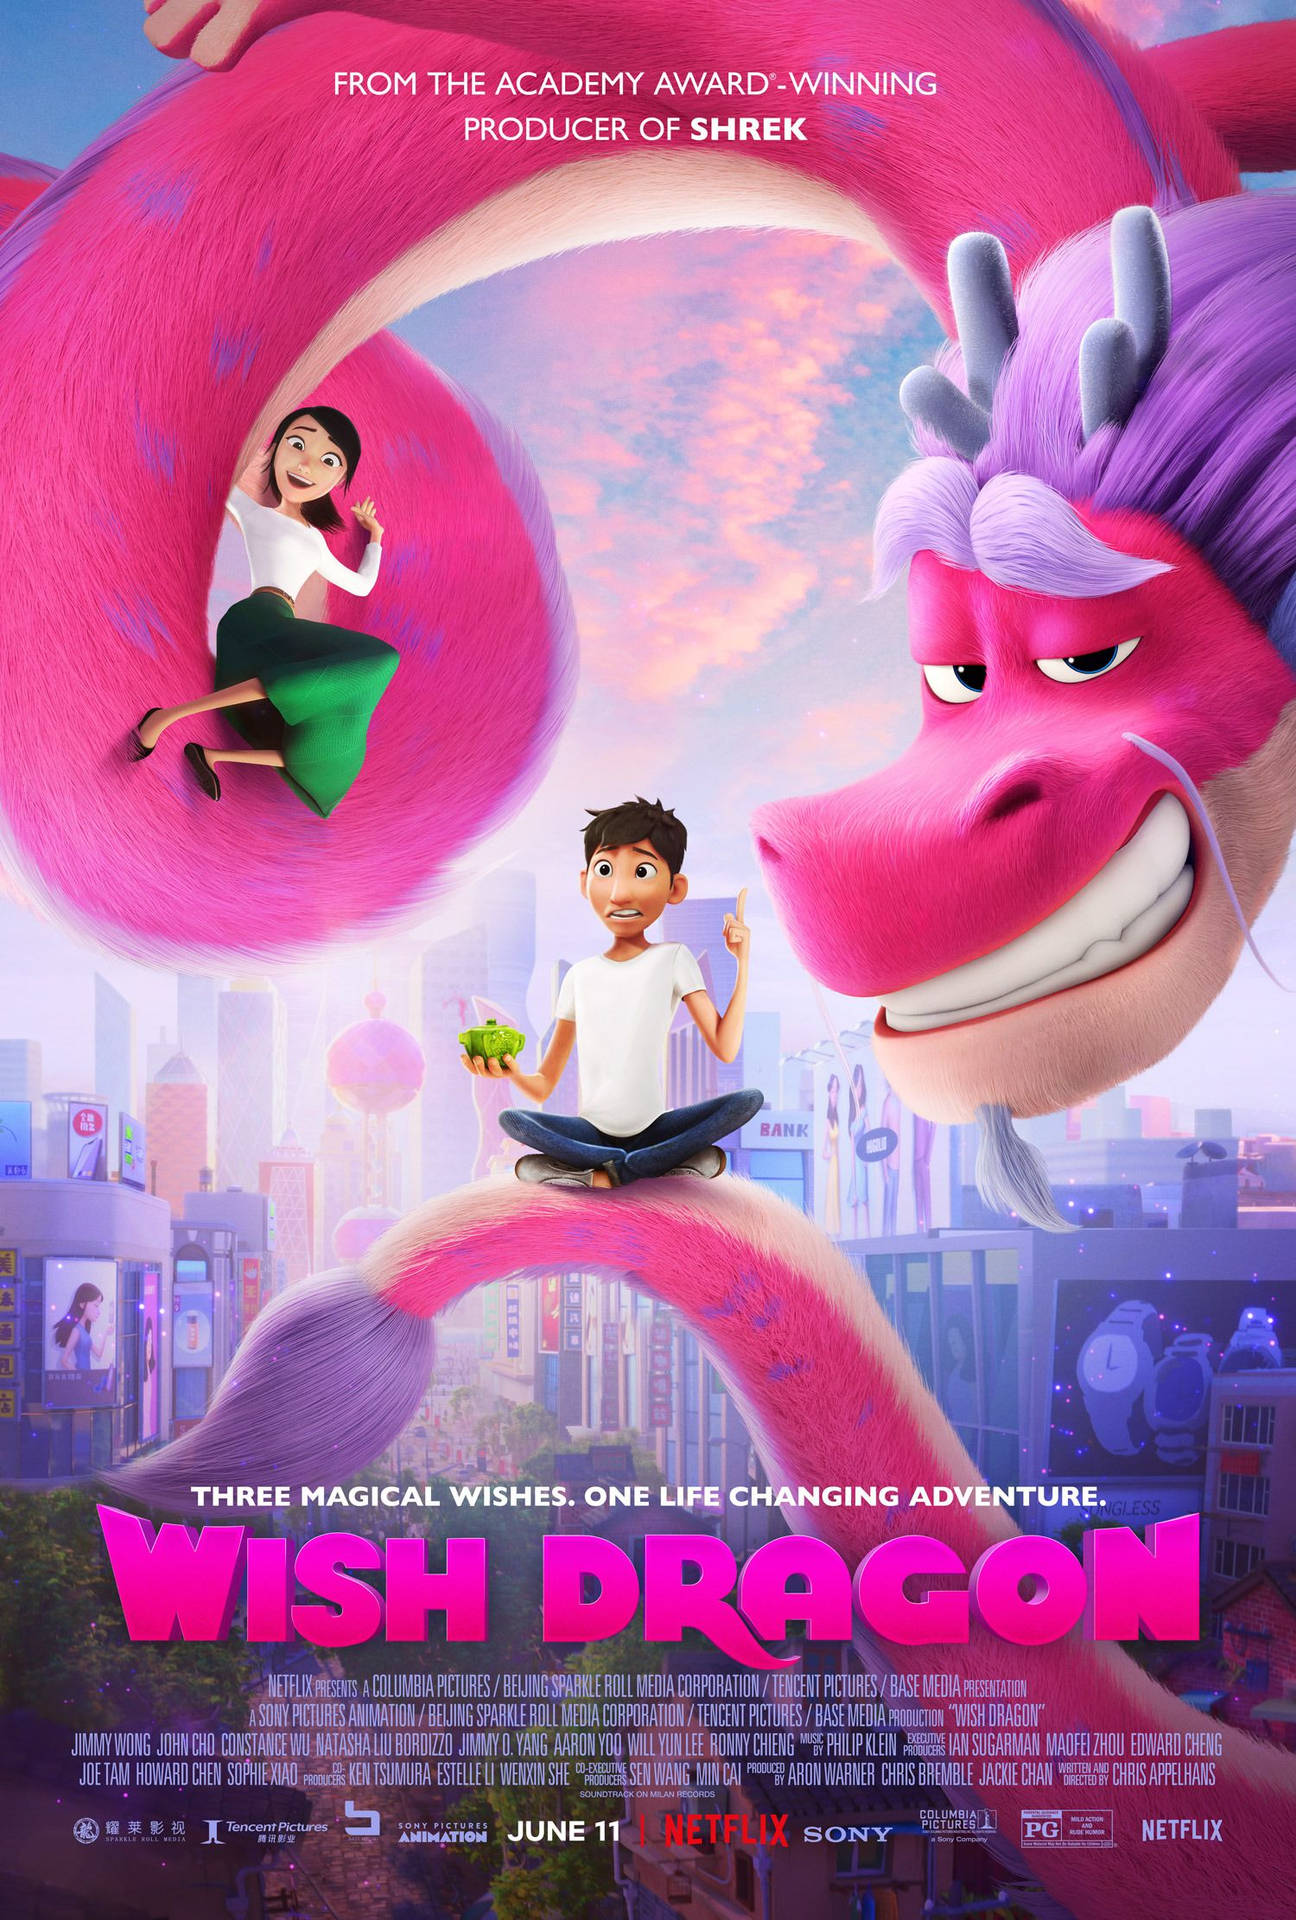 Netflix Wish Dragon Premiere Wallpaper